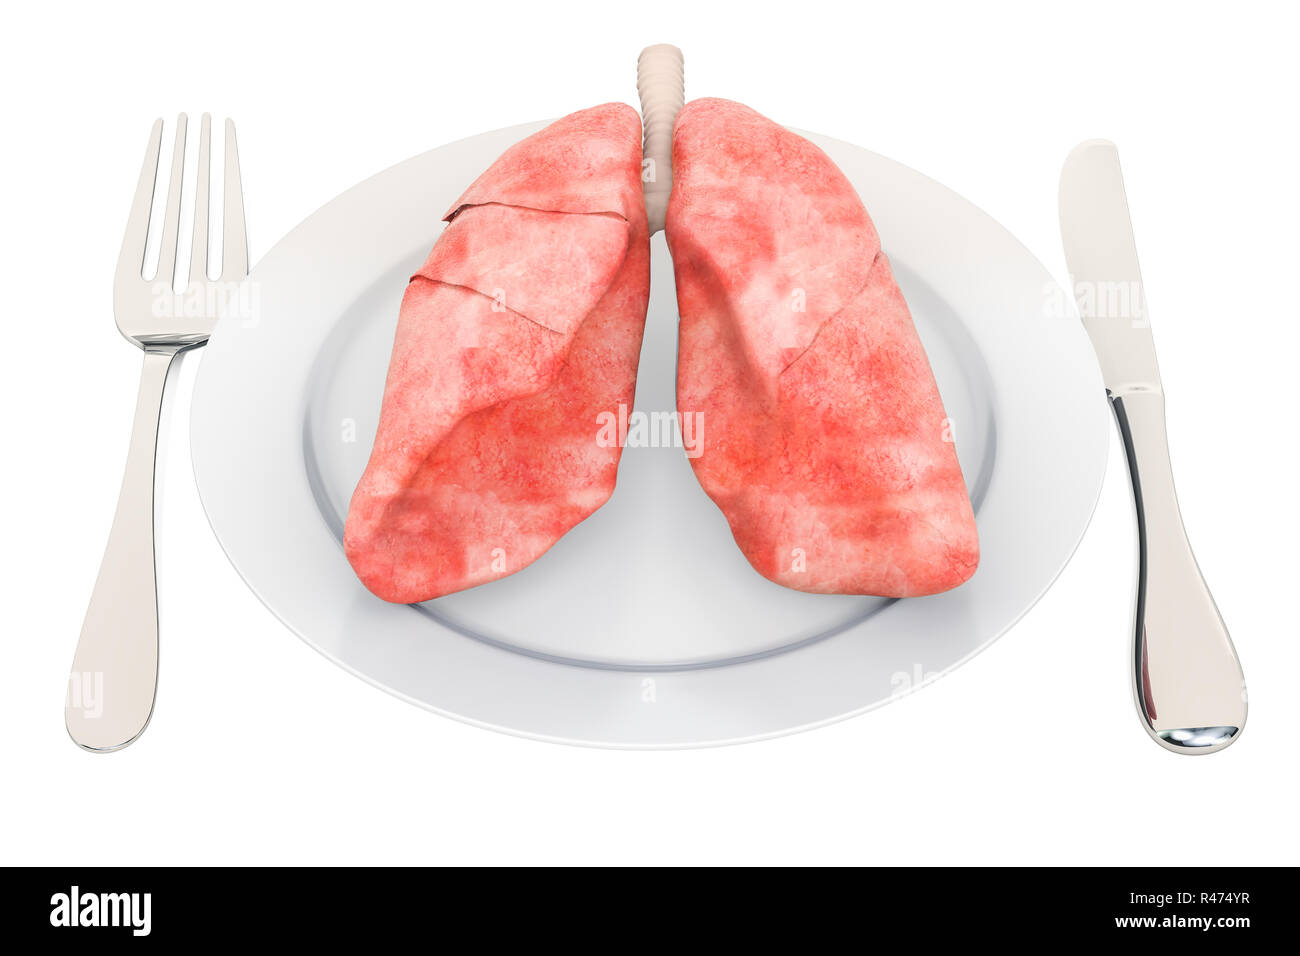 Ernährung für gesunde Lungen Konzept, 3D-Rendering auf weißem Hintergrund Stockfoto